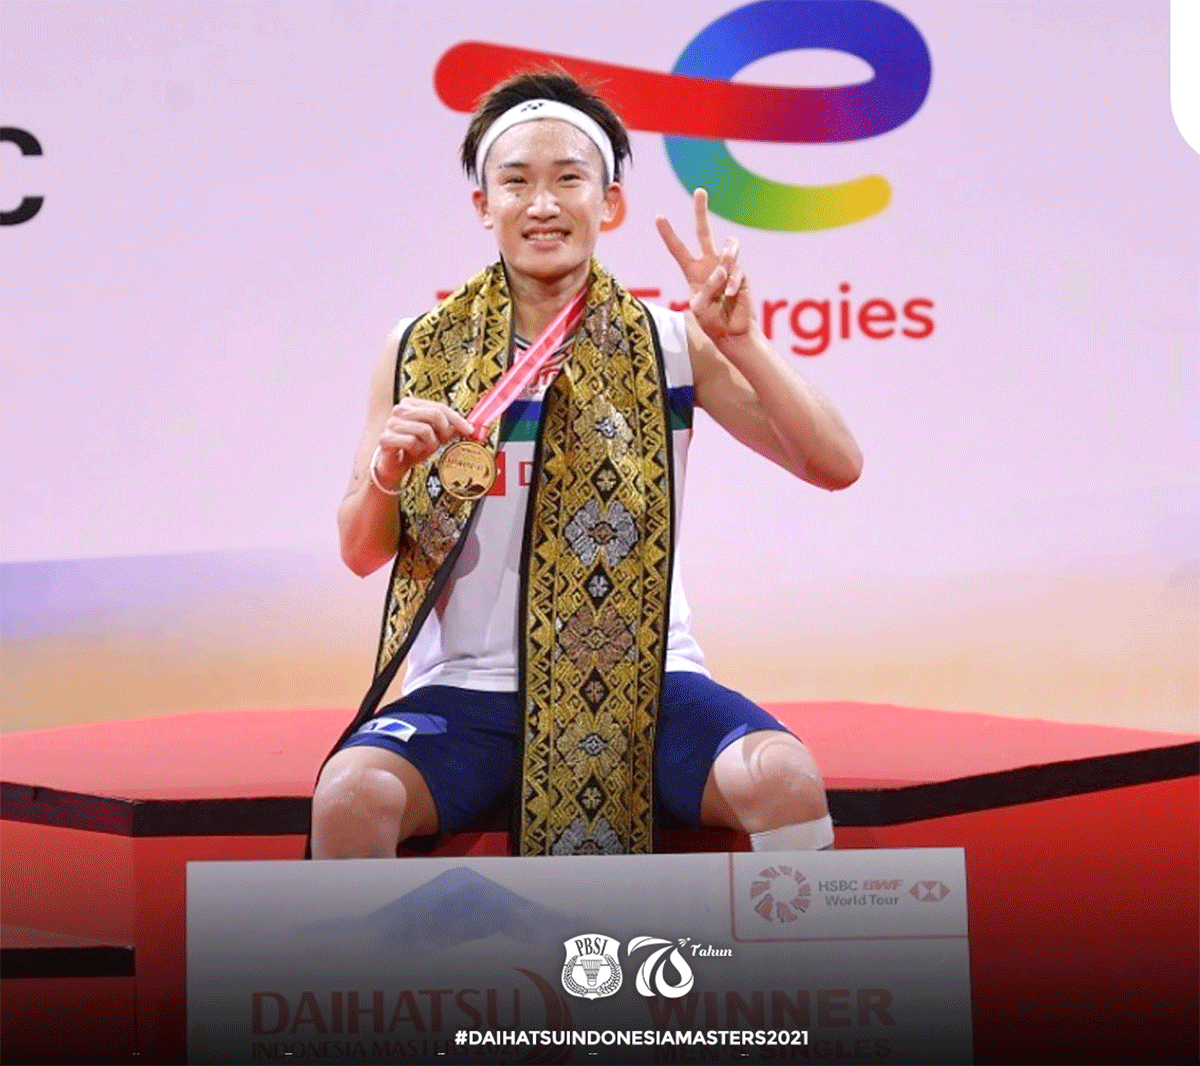 Kento Momota celebrates on winning the Indonesia Masters in Bali on Sunday